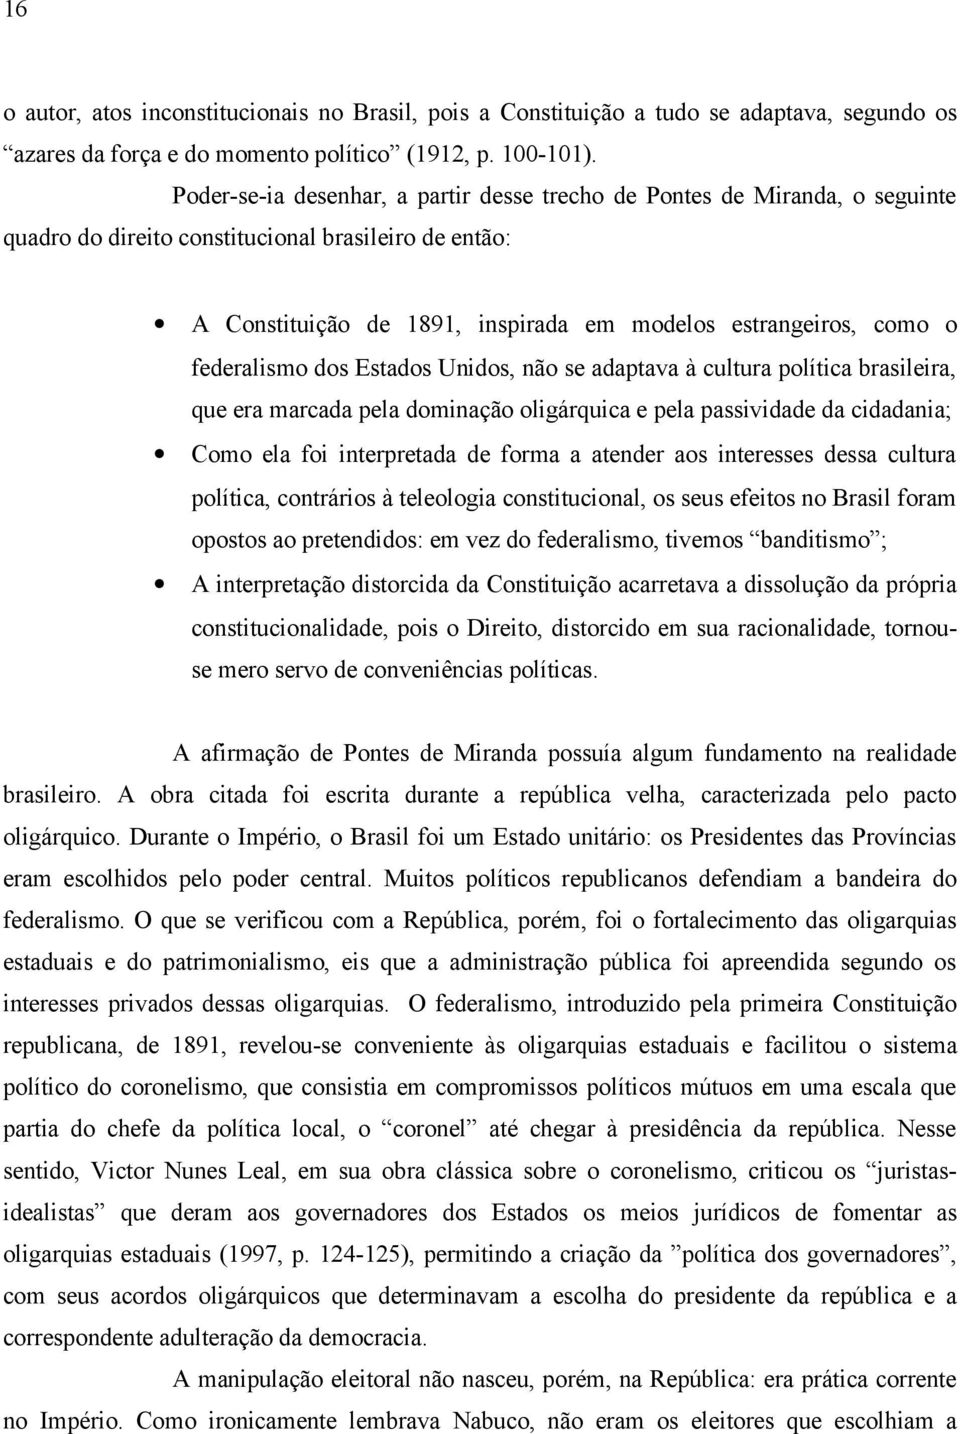 federalismo dos Estados Unidos, não se adaptava à cultura política brasileira, que era marcada pela dominação oligárquica e pela passividade da cidadania; Como ela foi interpretada de forma a atender